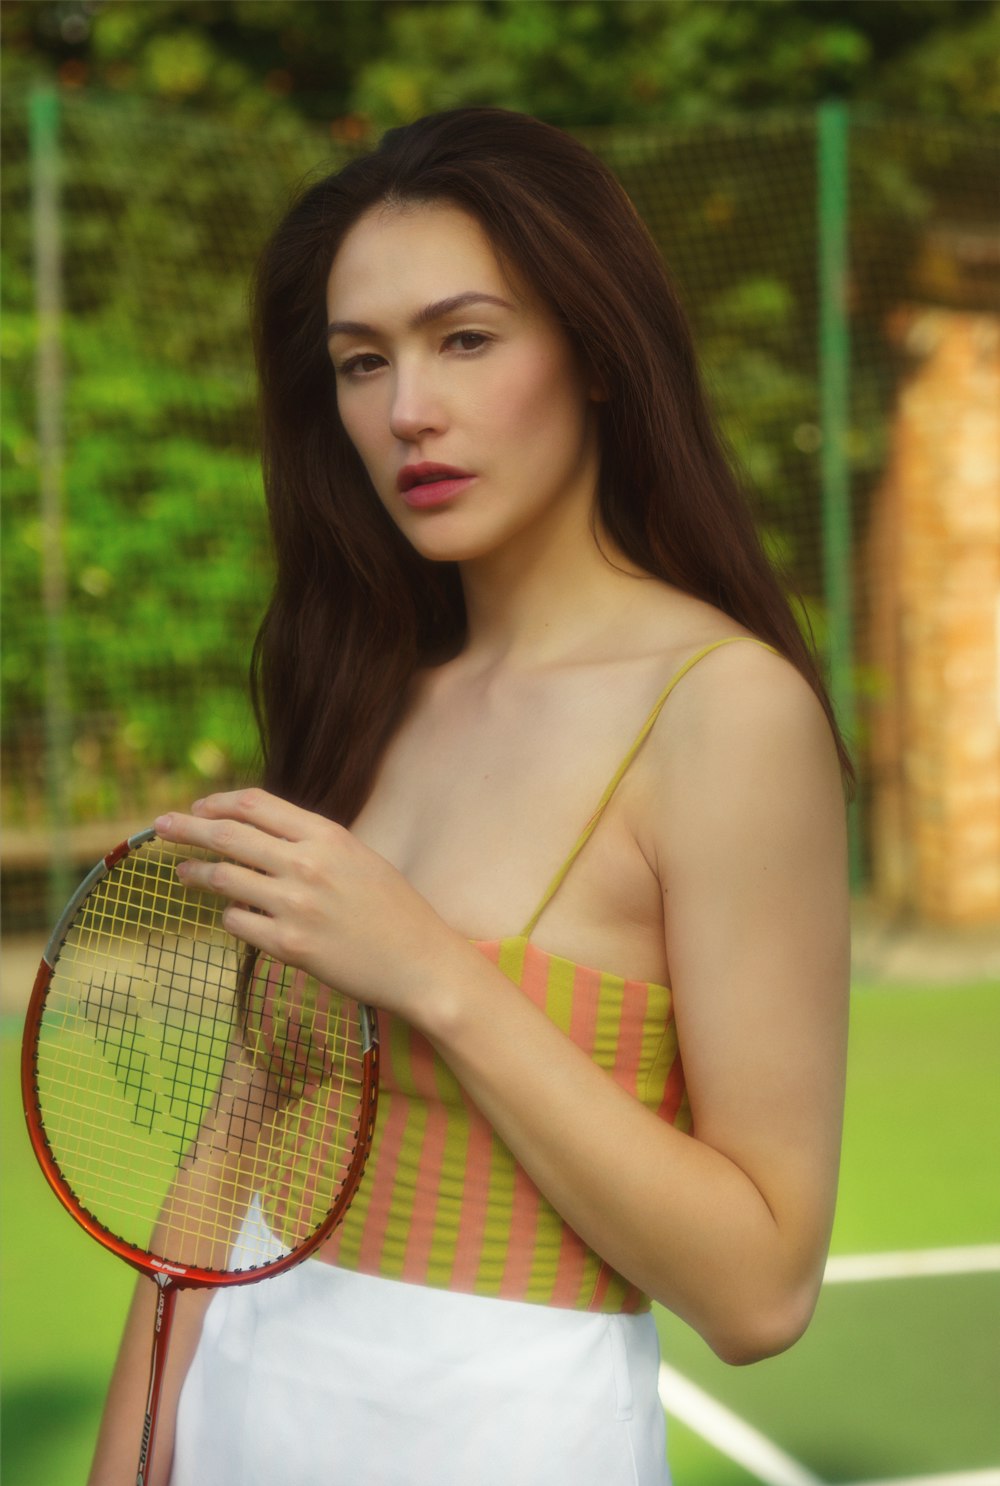 donna in bikini giallo e verde che tiene la racchetta da tennis